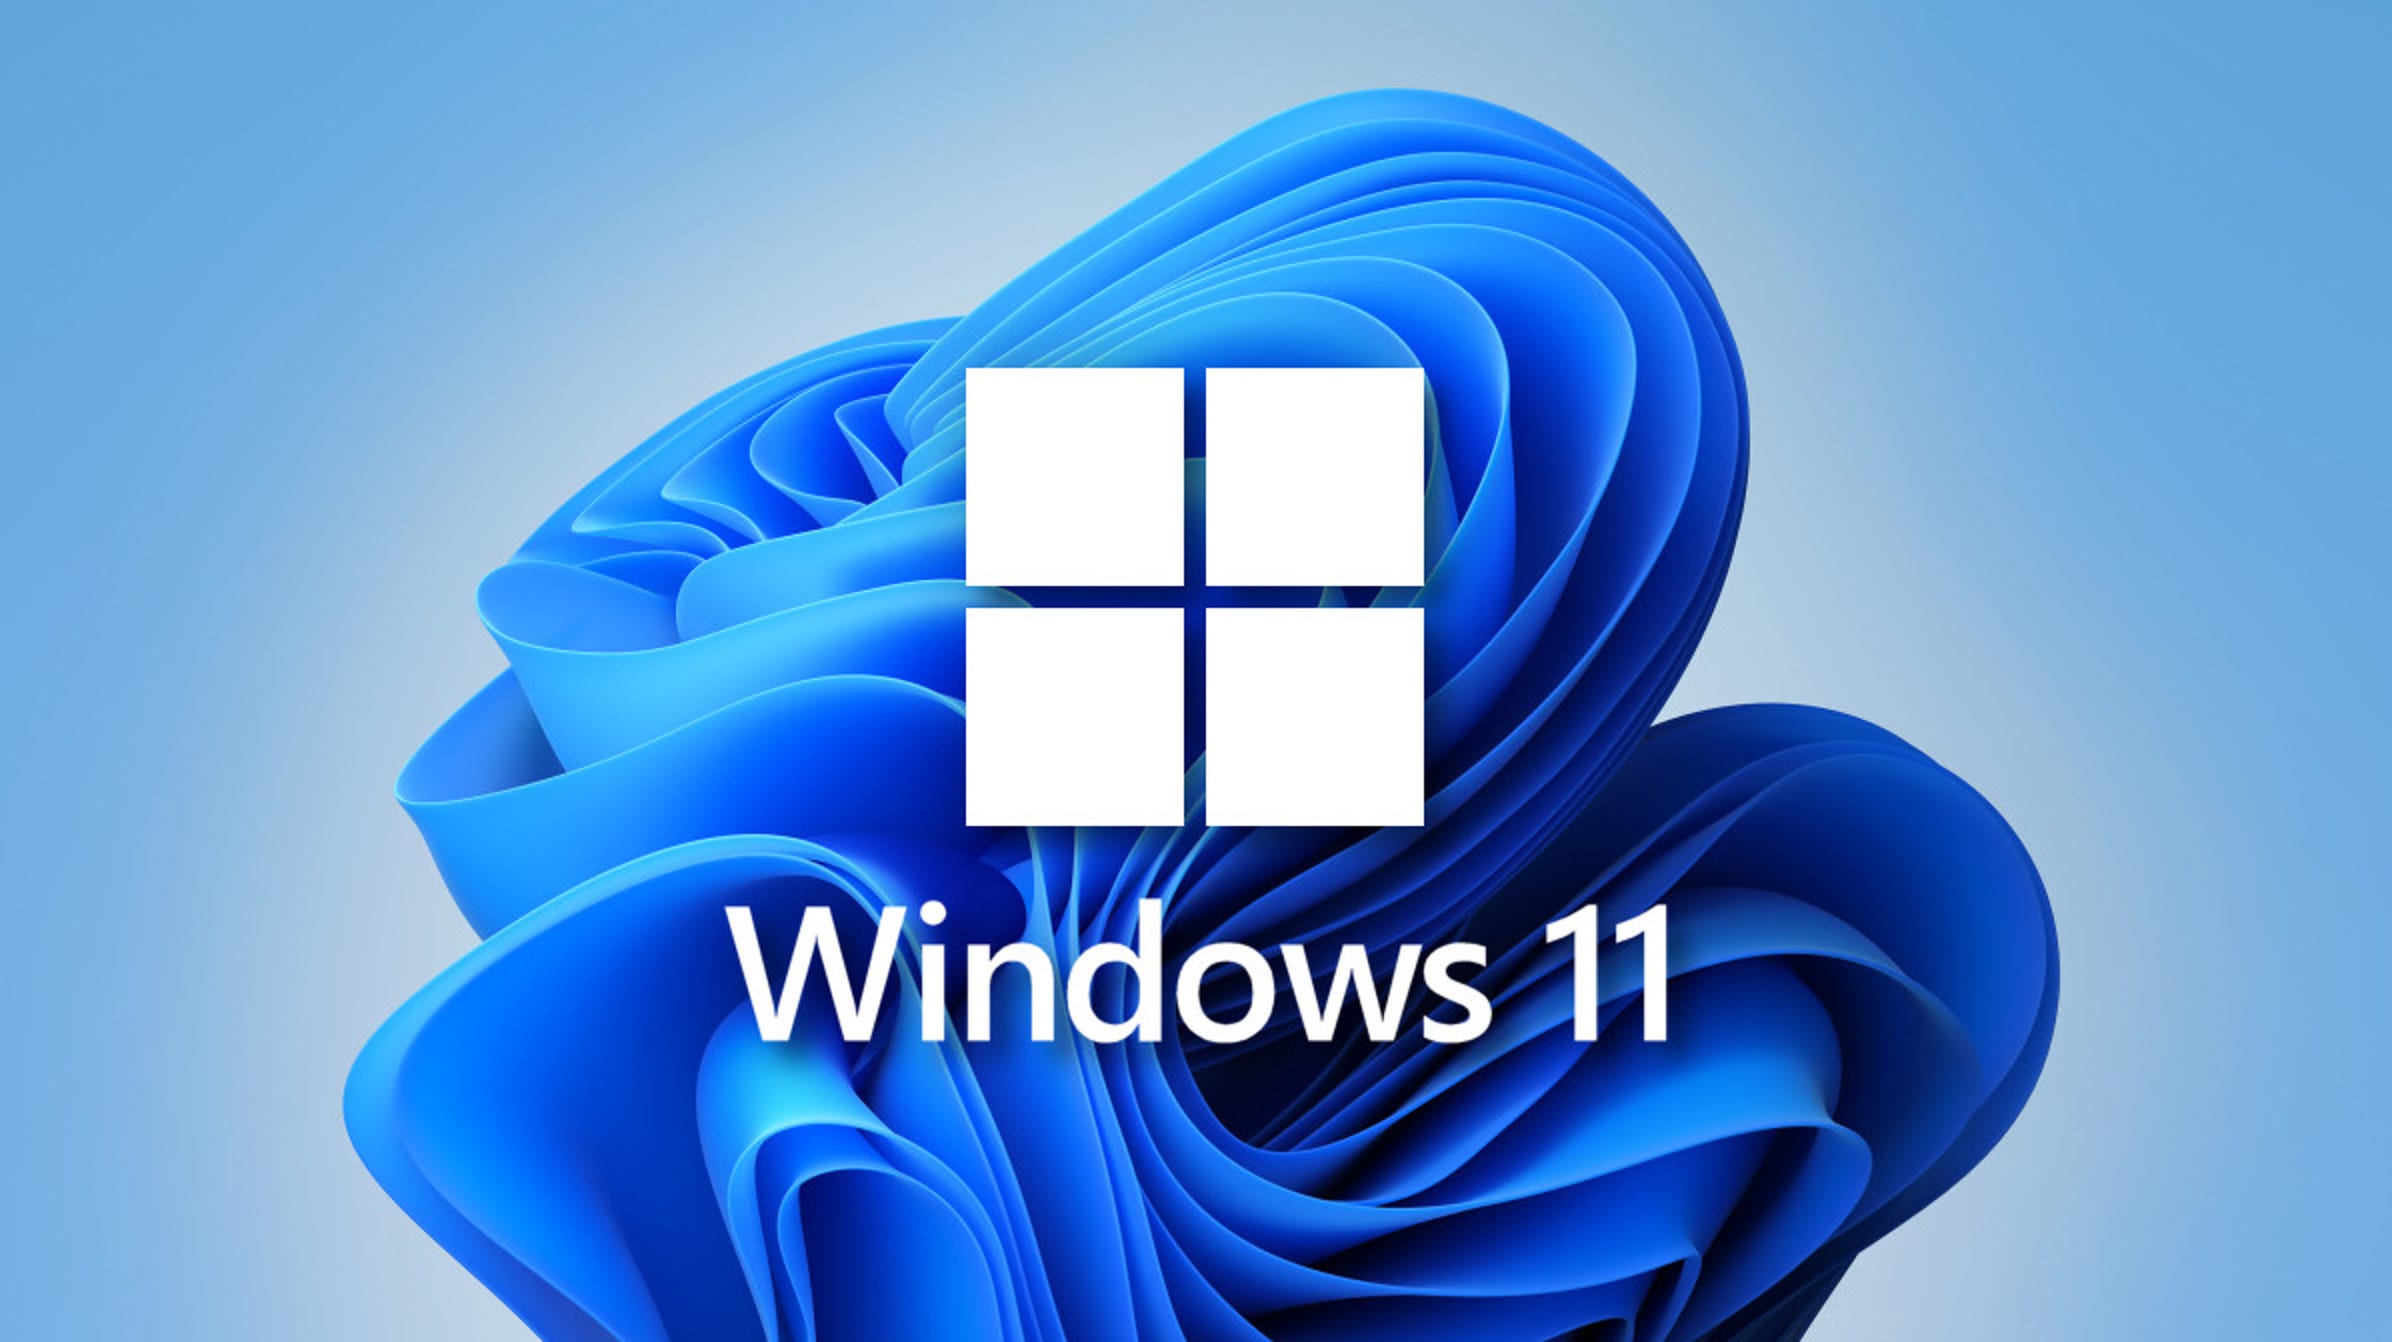 Los usuarios de Windows 10 han empezado a recibir nuevos anuncios pidiéndoles que actualicen a Windows 11